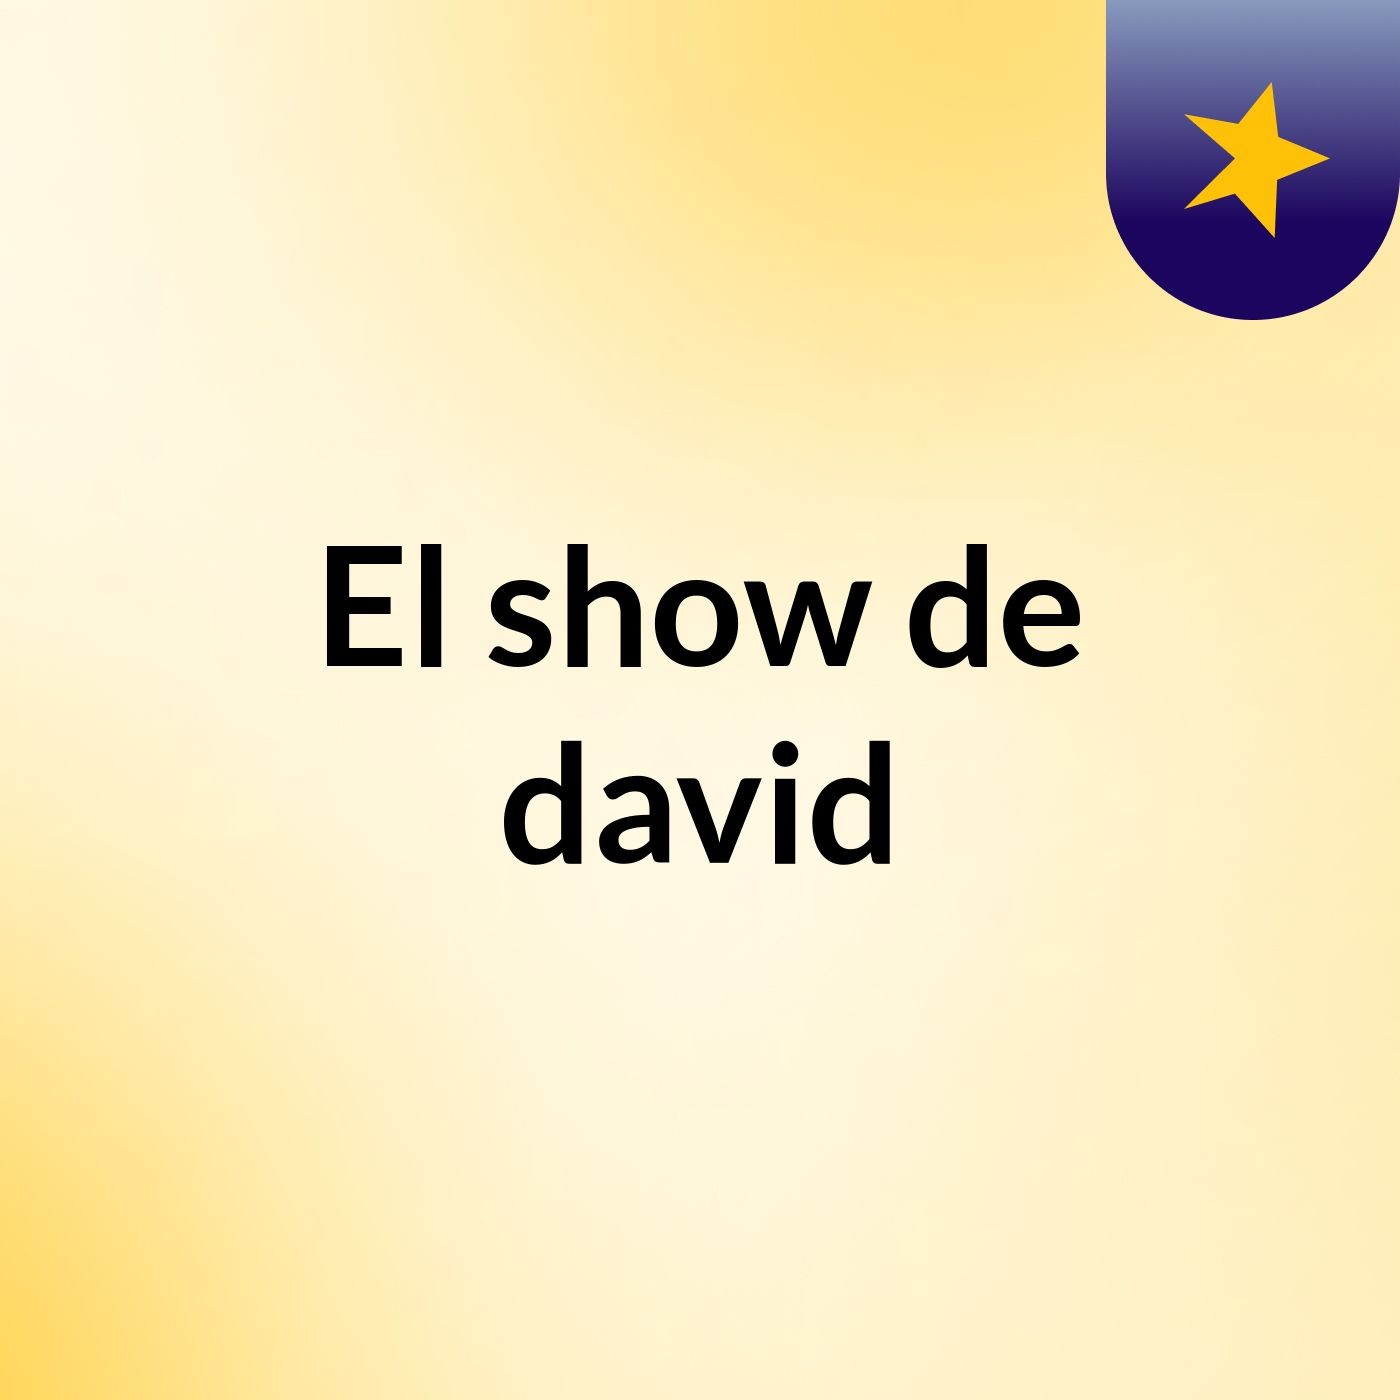 El show de david